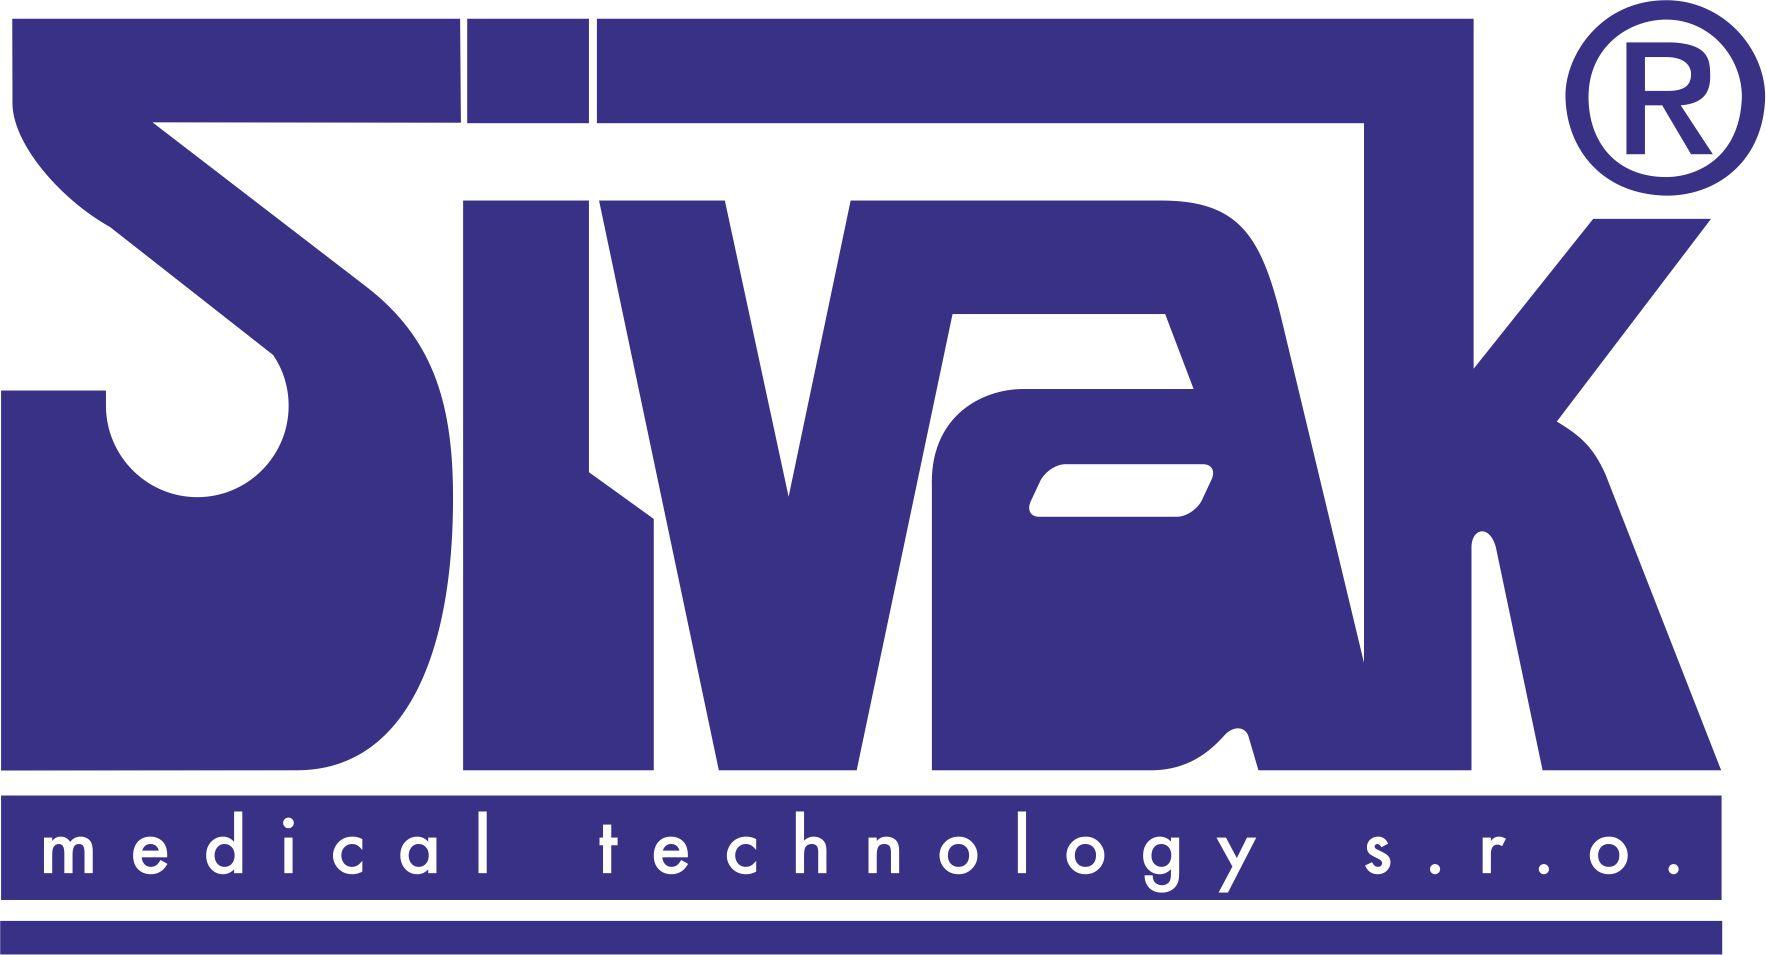 Sivak medical technology s.r.o. logo